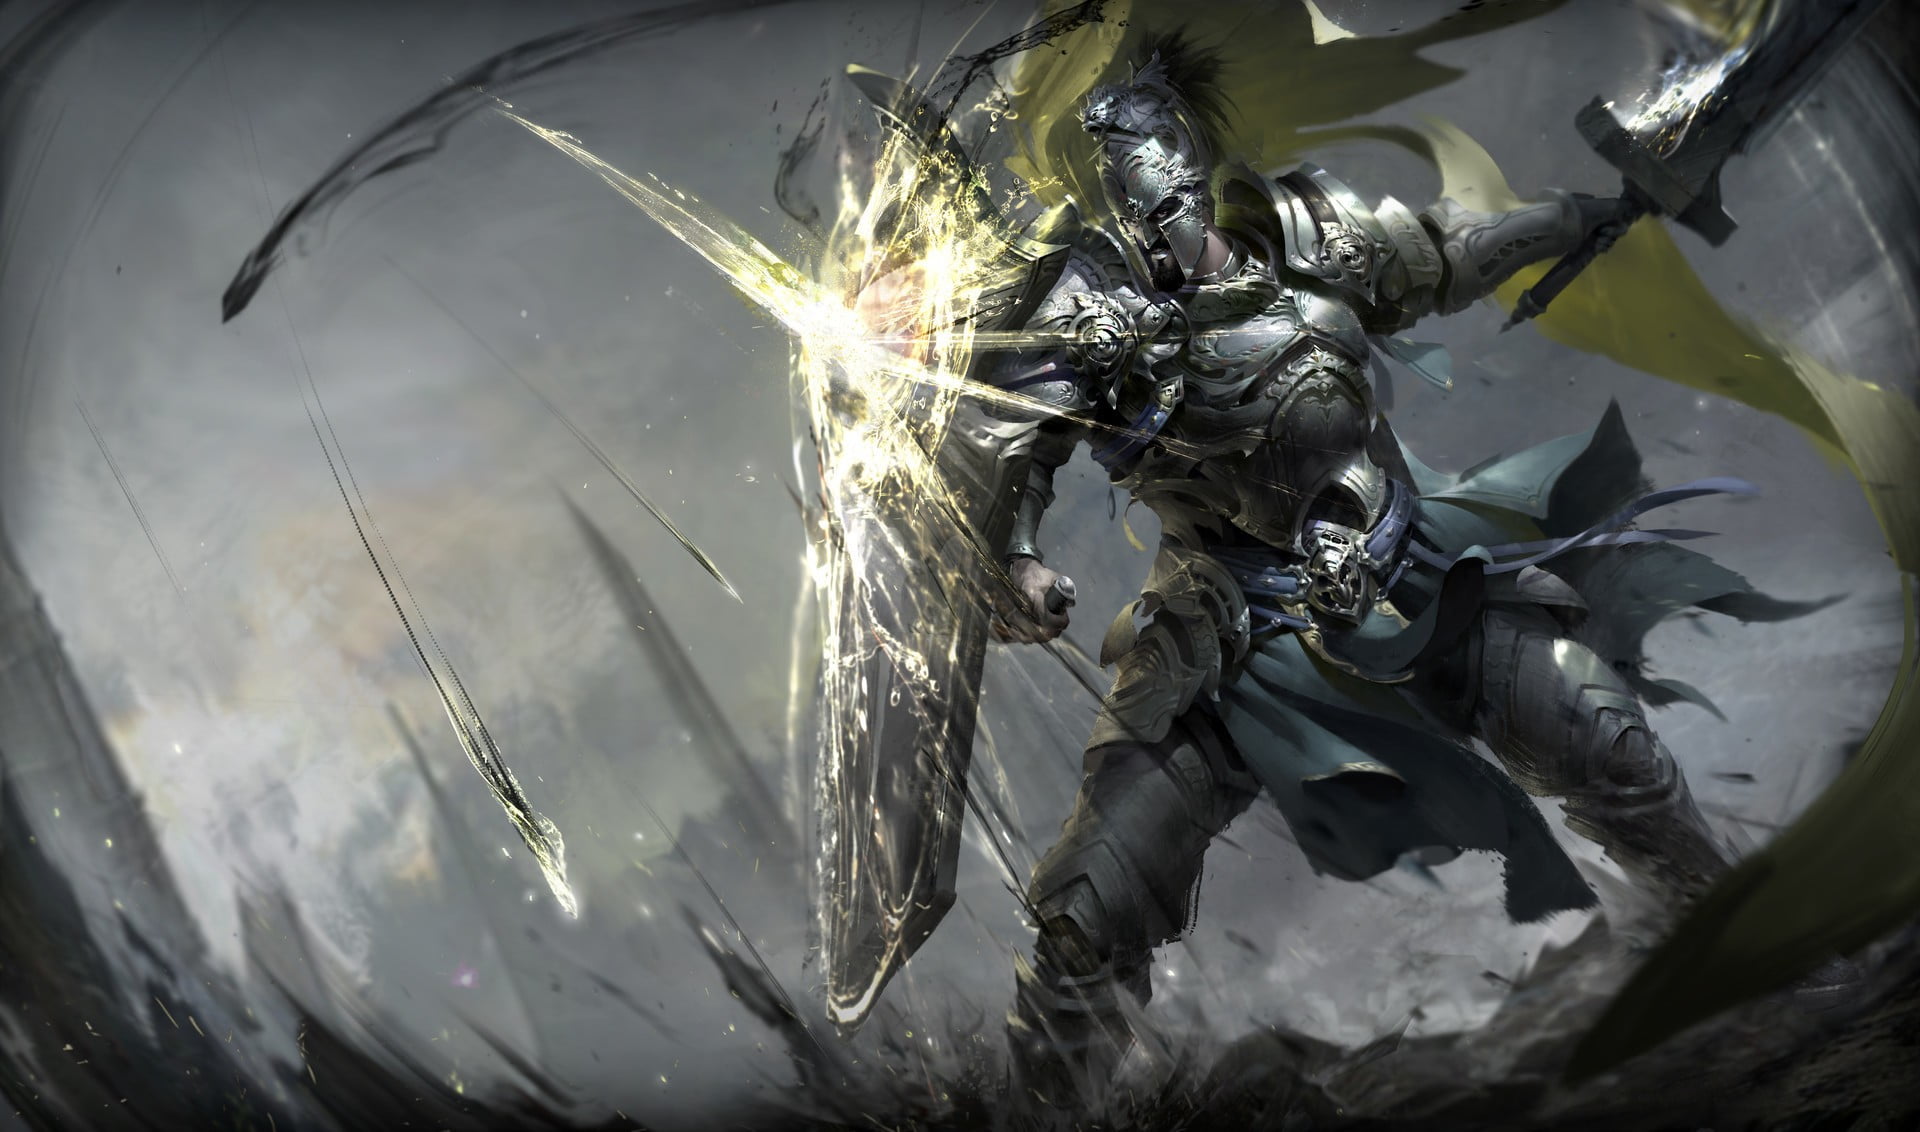 Knight holding sword and shield digital wallpaper, warrior, fantasy art